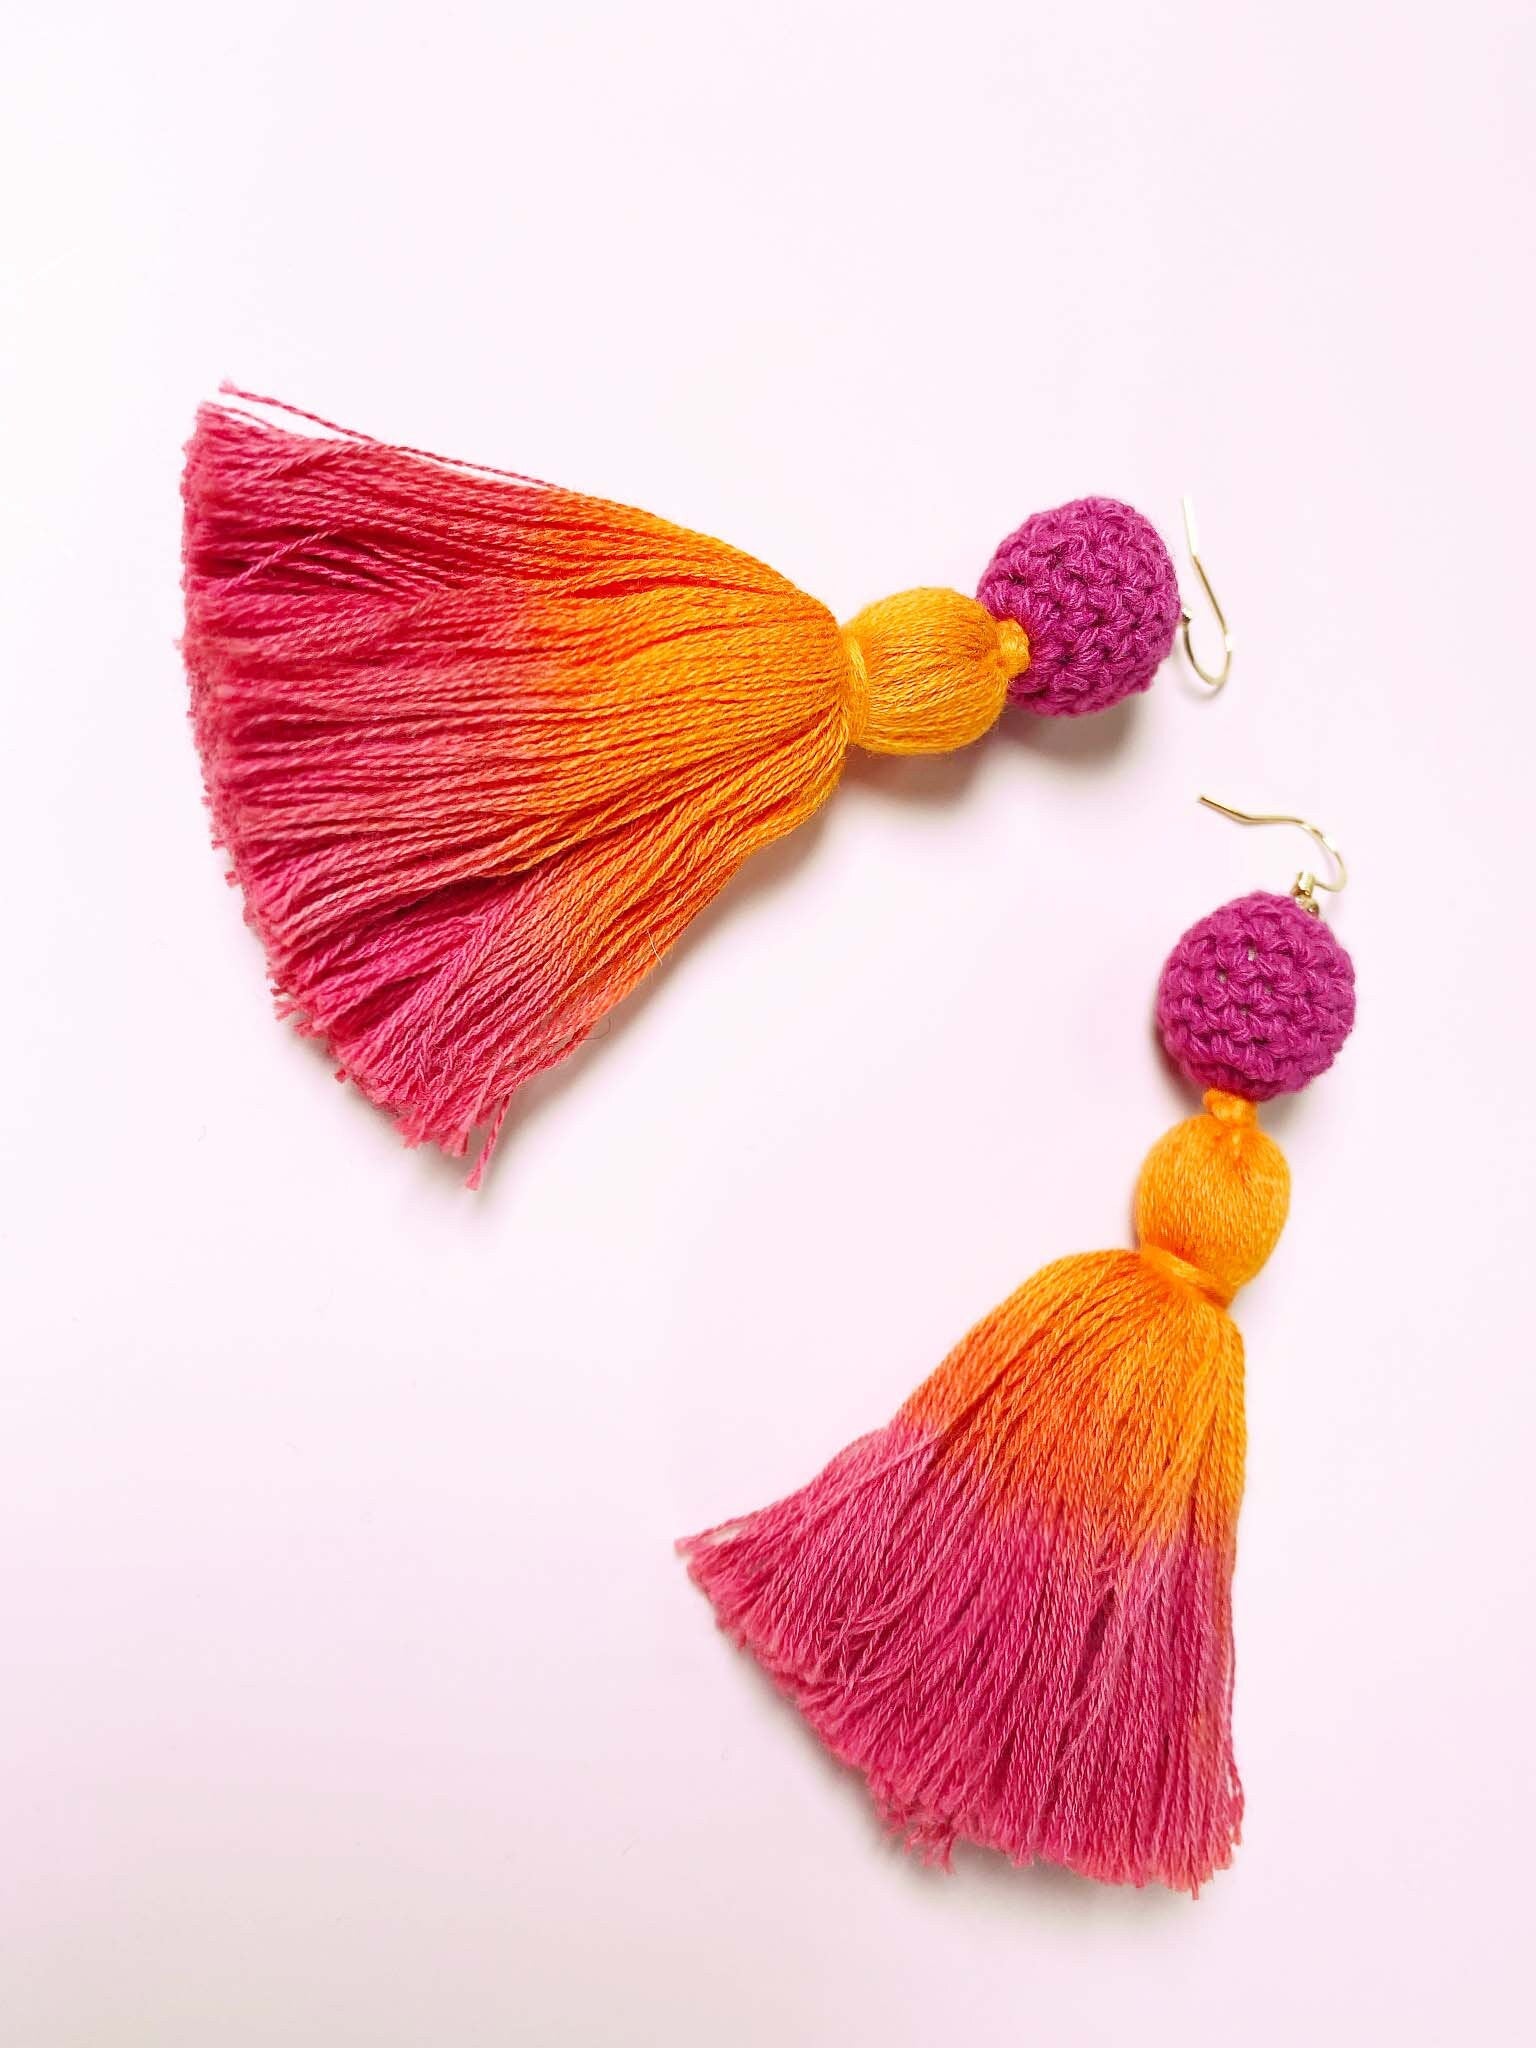 Statement Tassel Earrings w/ 18K Gold Plated Post, Long Fringe Ombre Earrings, Dangle Earrings for Her, Crochet Earrings, Bohemian Jewelry